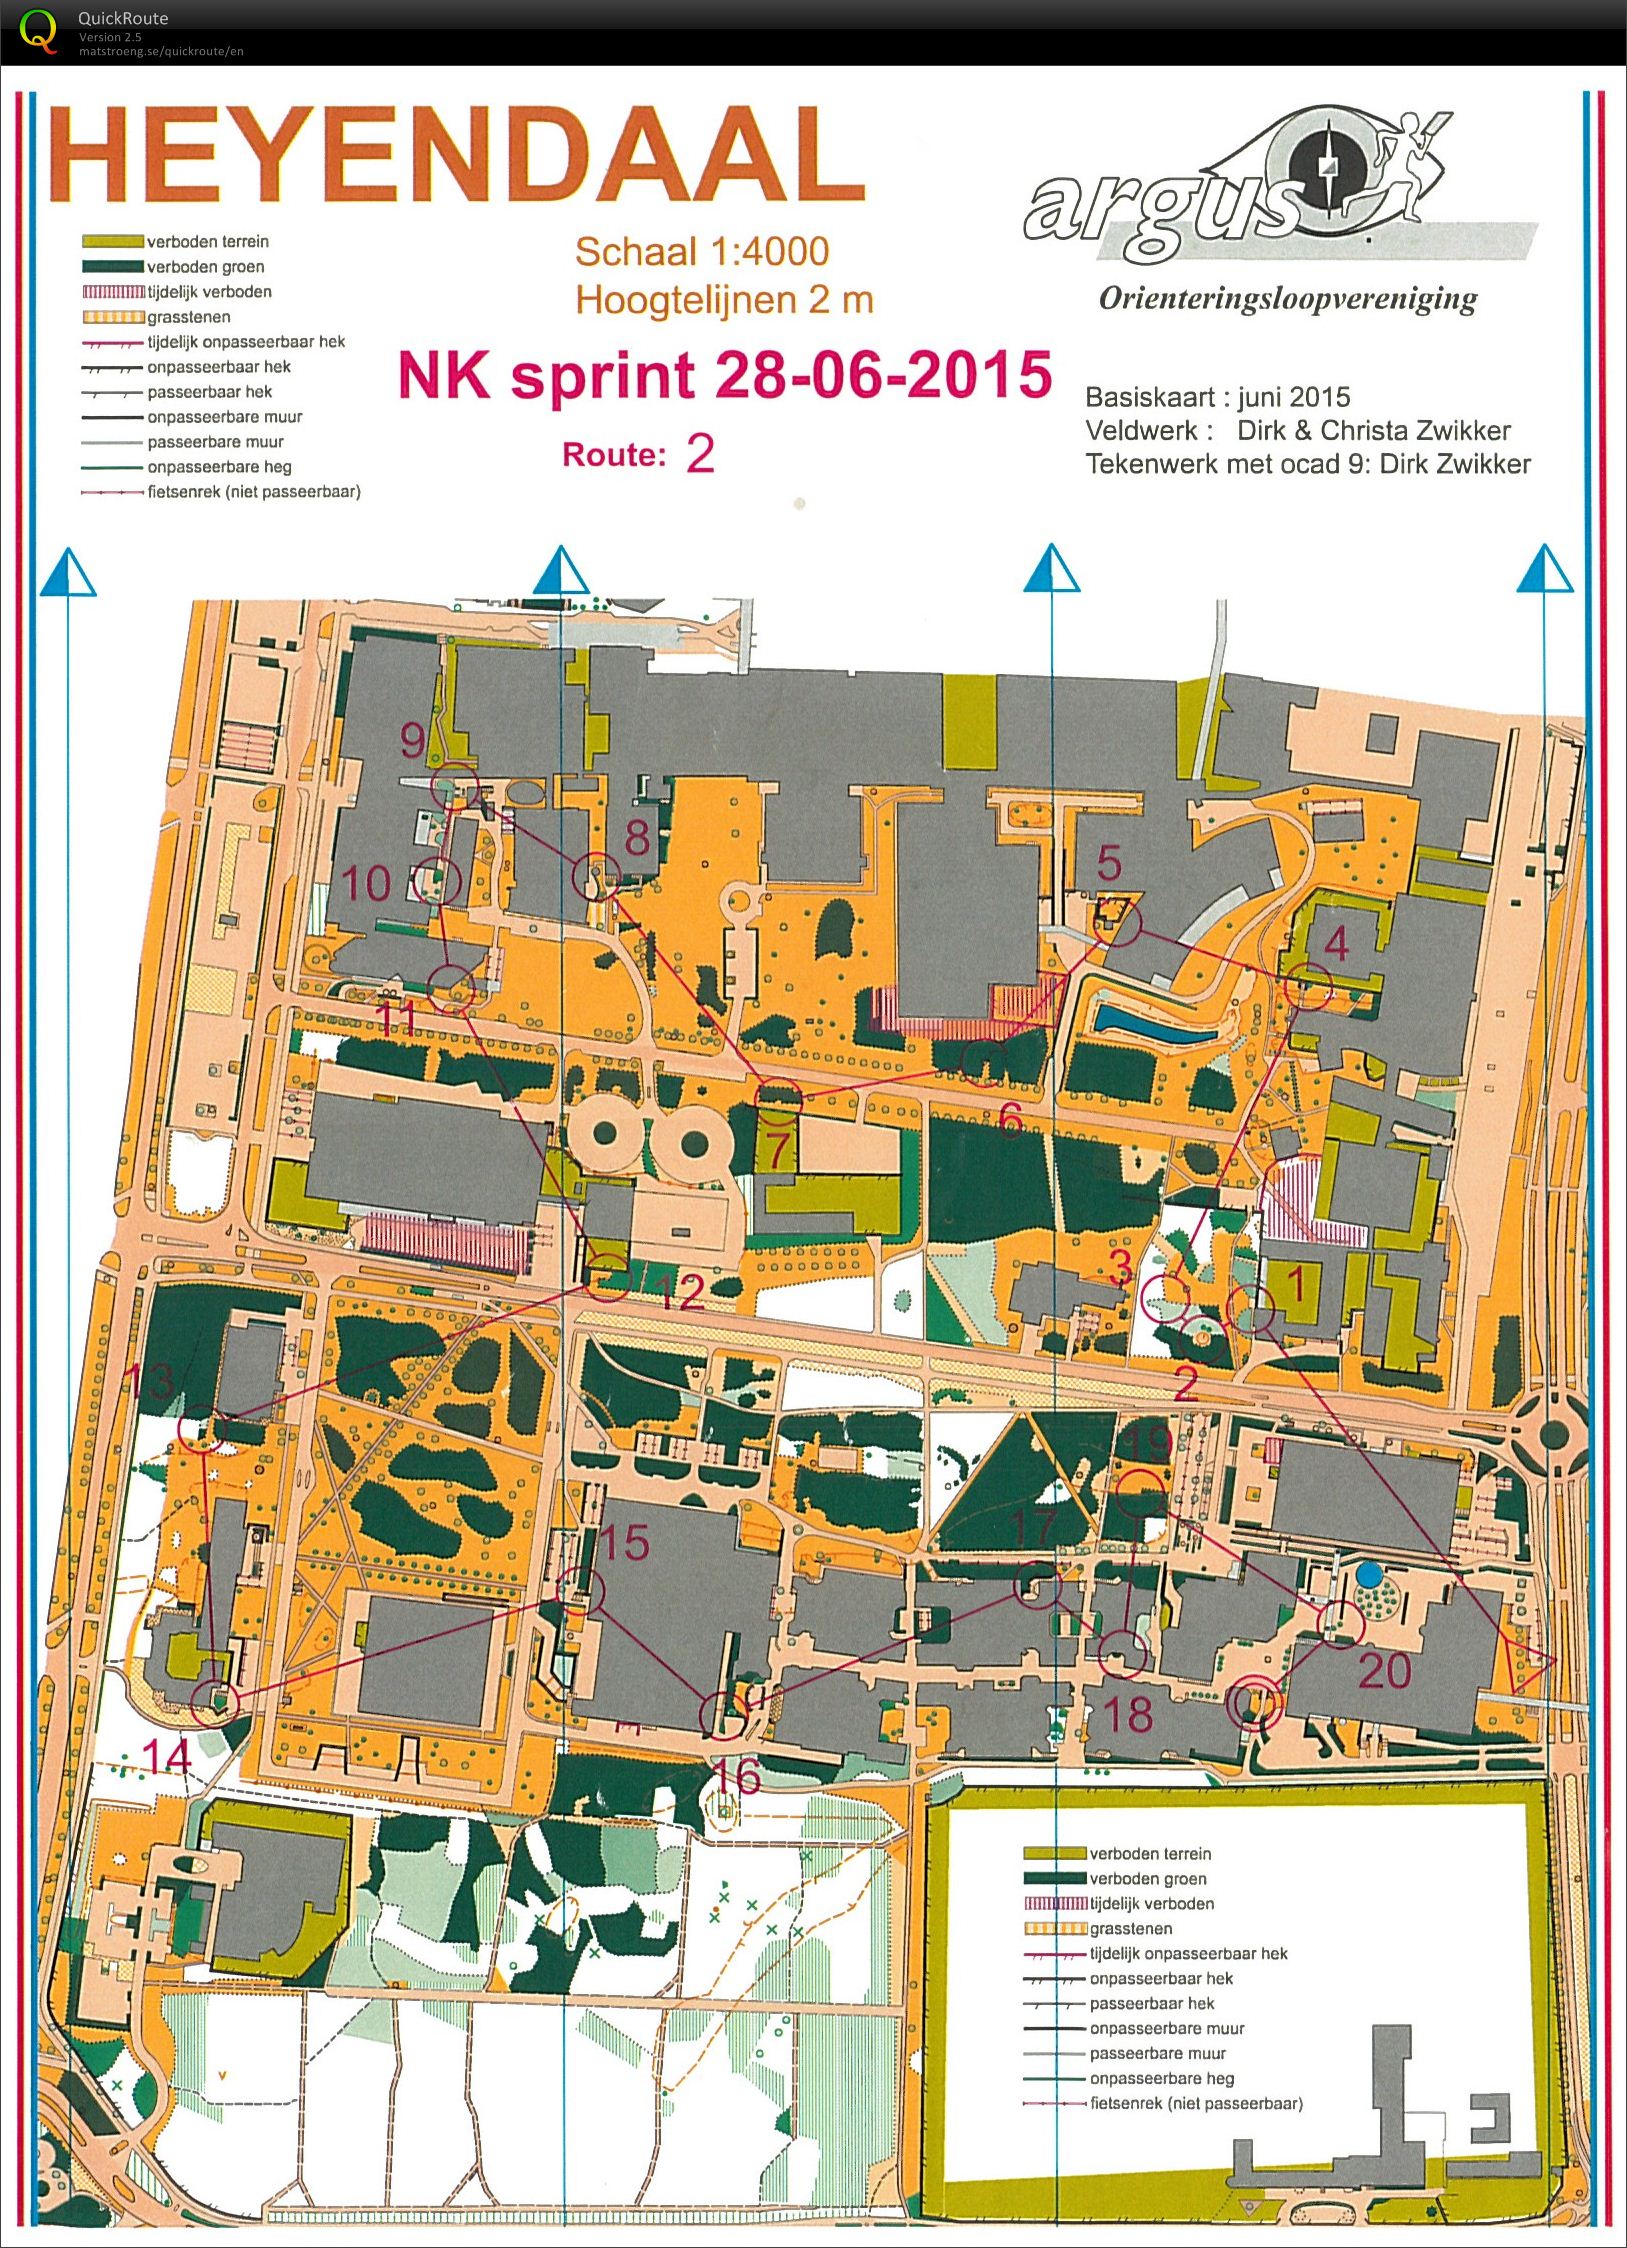 NK Sprint Heyendaal (28.06.2015)